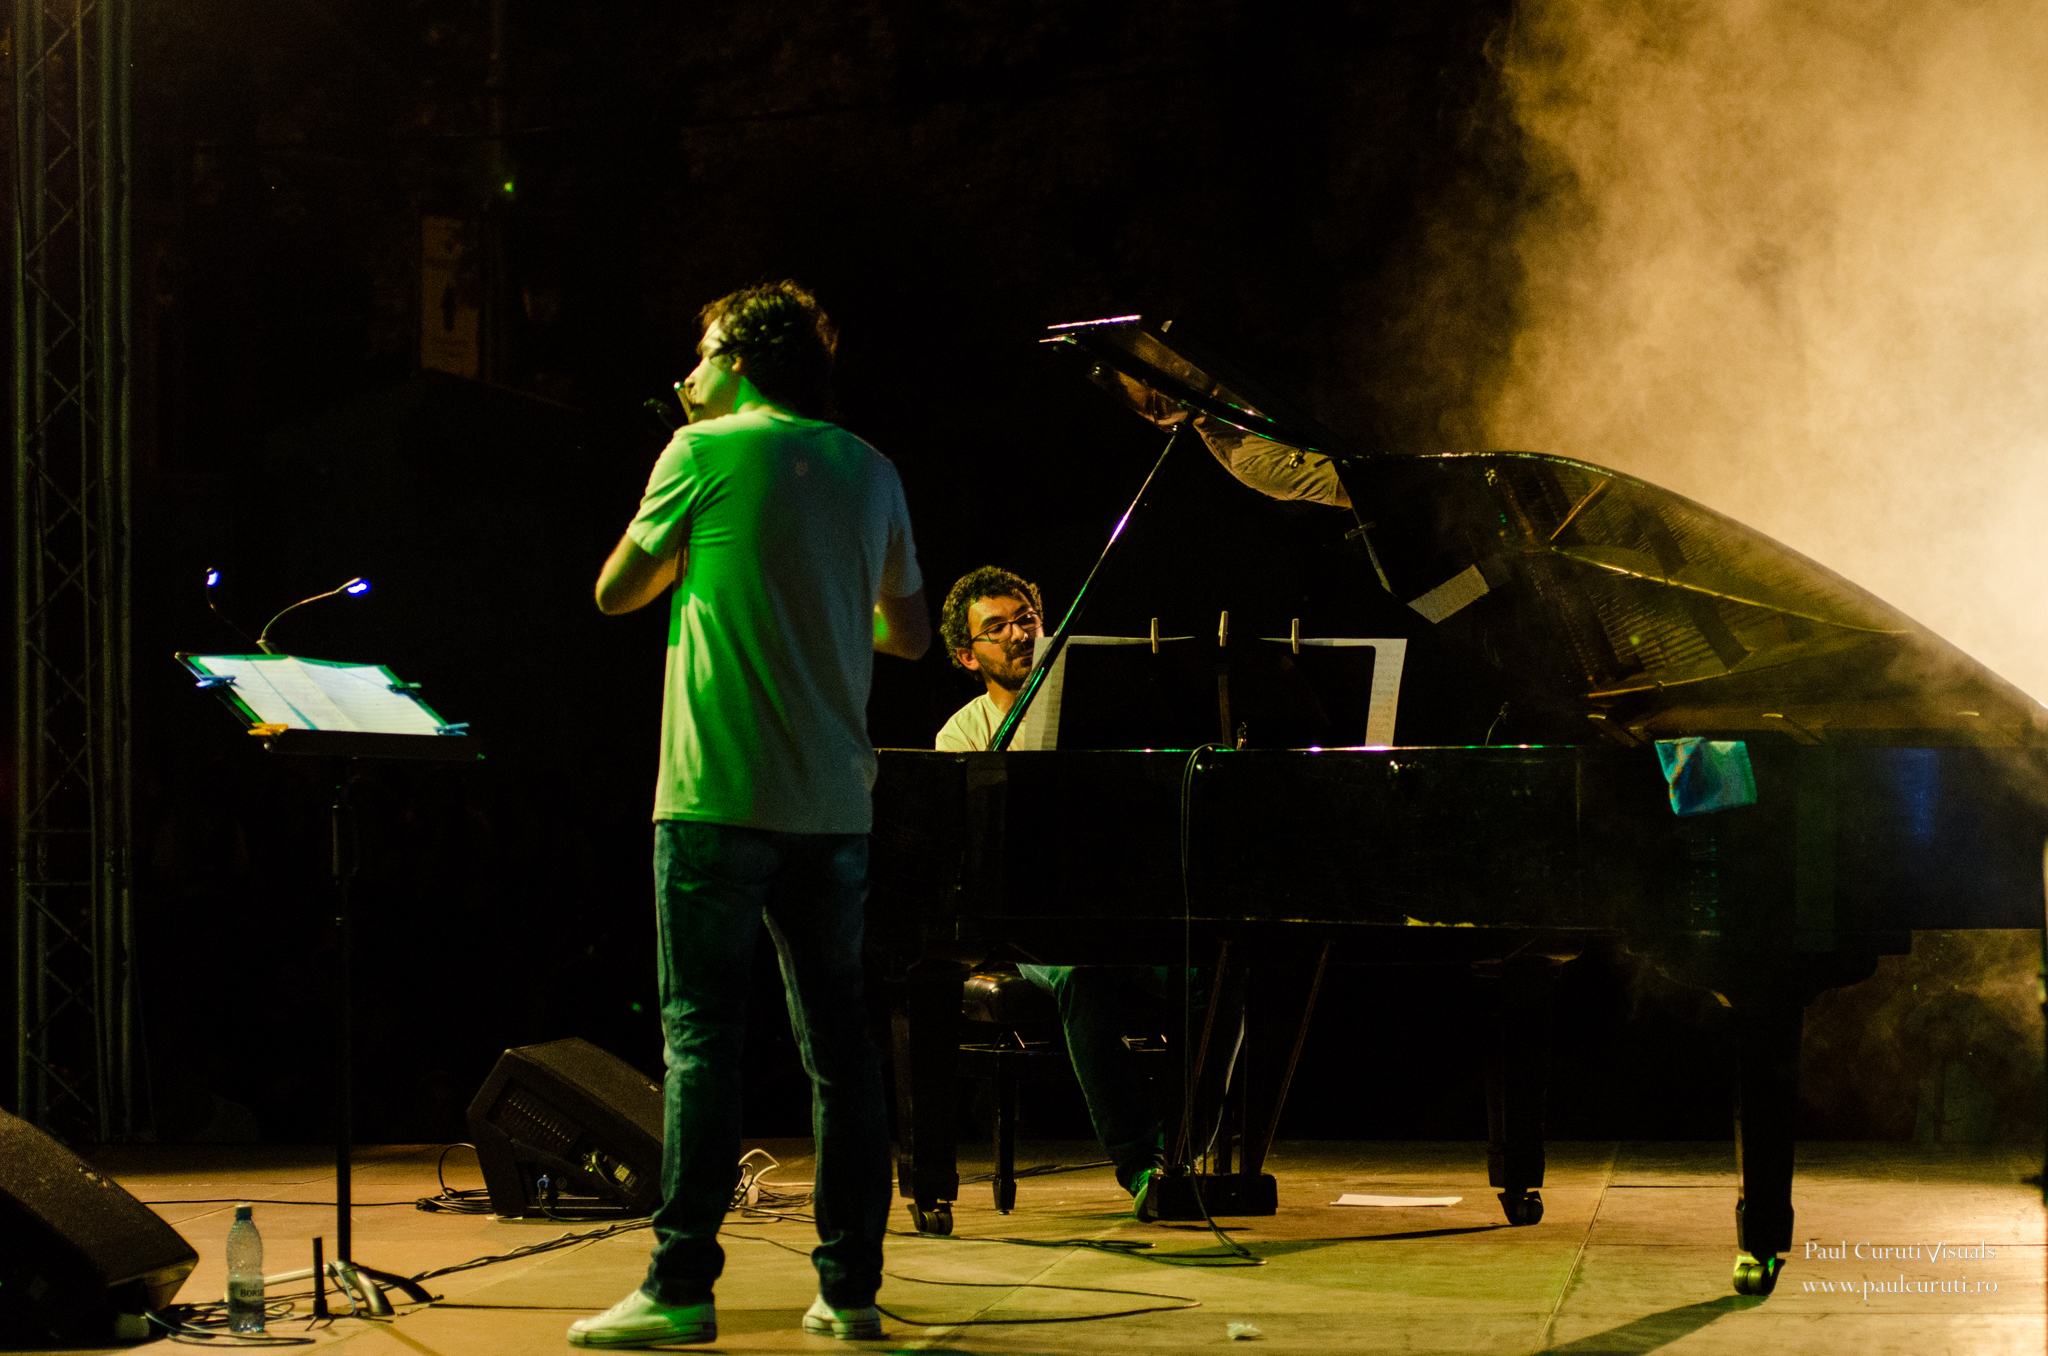 Pianist Teo Milea performing in Timisoara (Romania 2015)